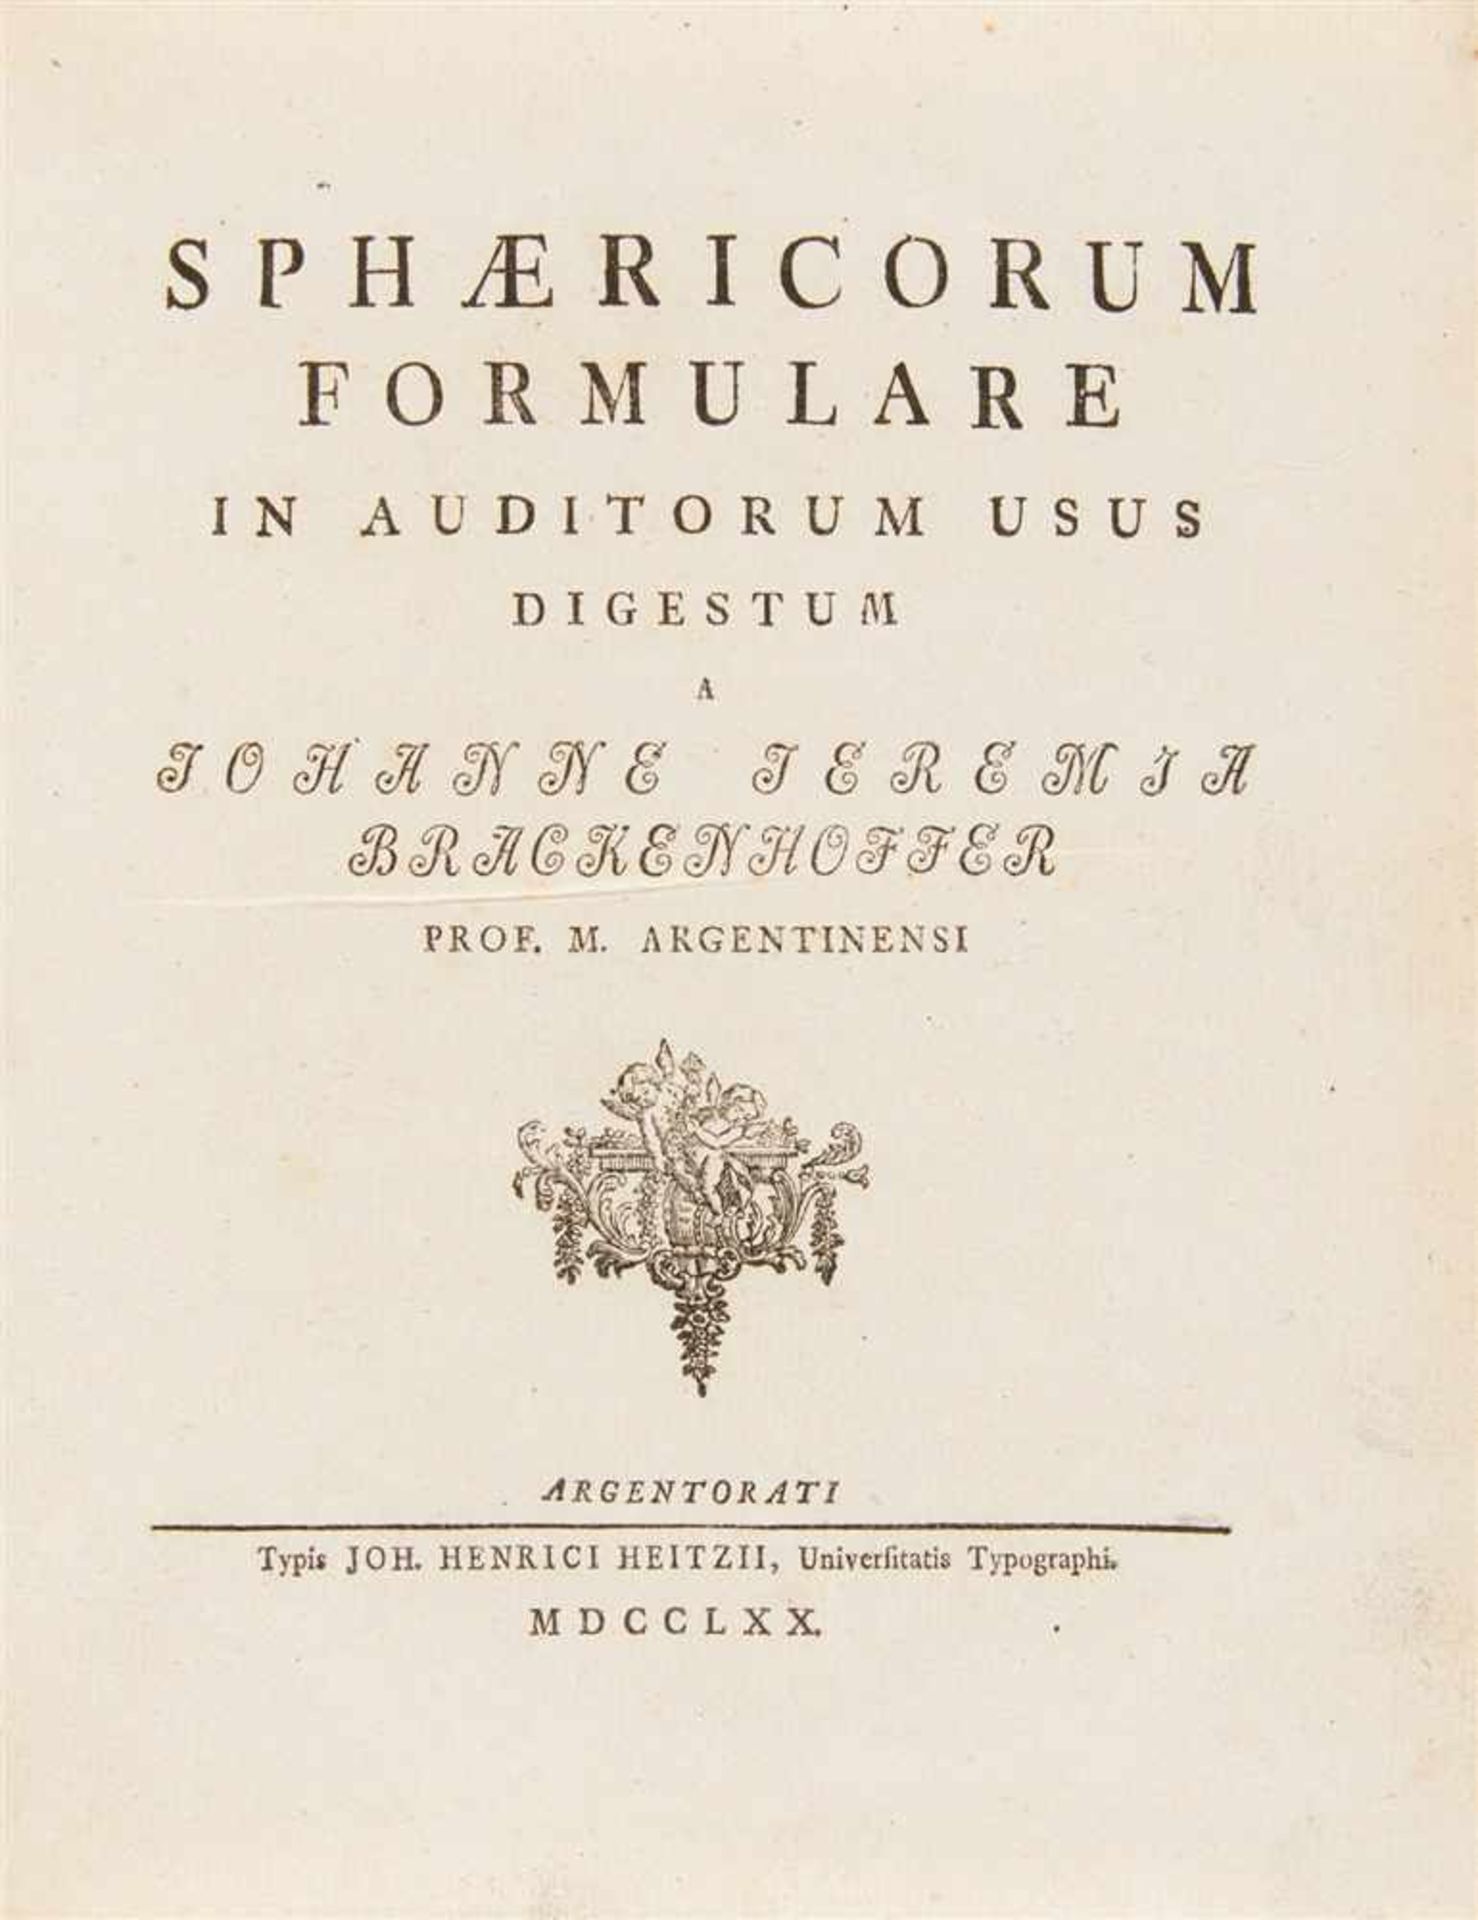 Brackenhofer, Joh. Jeremias: Sphæricorum formulare in auditorum usus digestum. Straßburg: Heitz